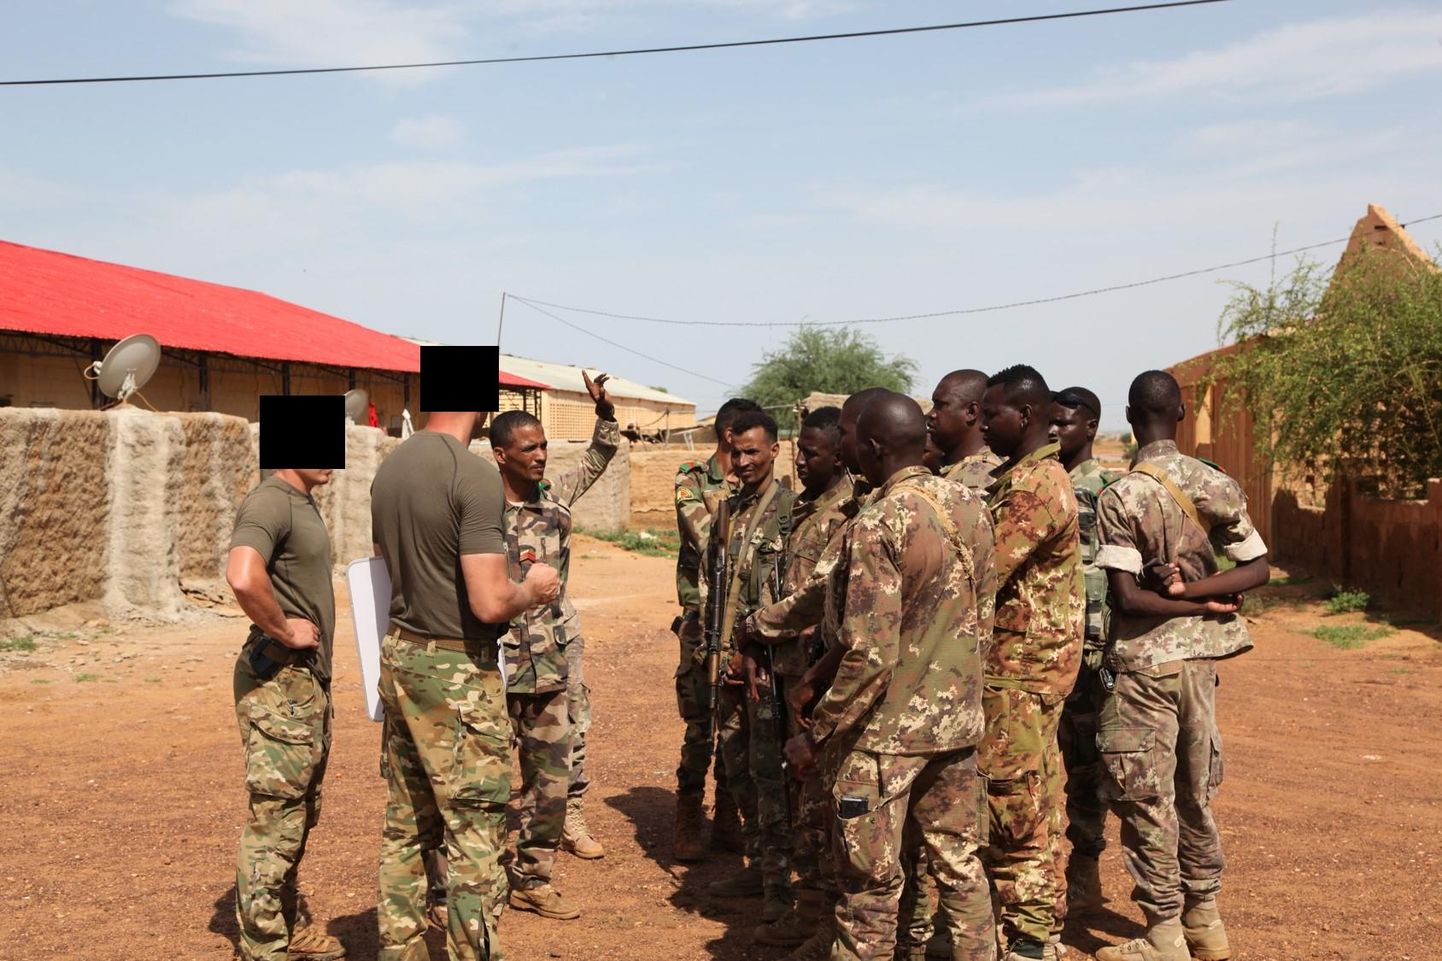 Eesti erioperaatorid õpetamas Mali sõjaväelasi. Eriüksuslaste nägu ei tohi avalikult näidata.